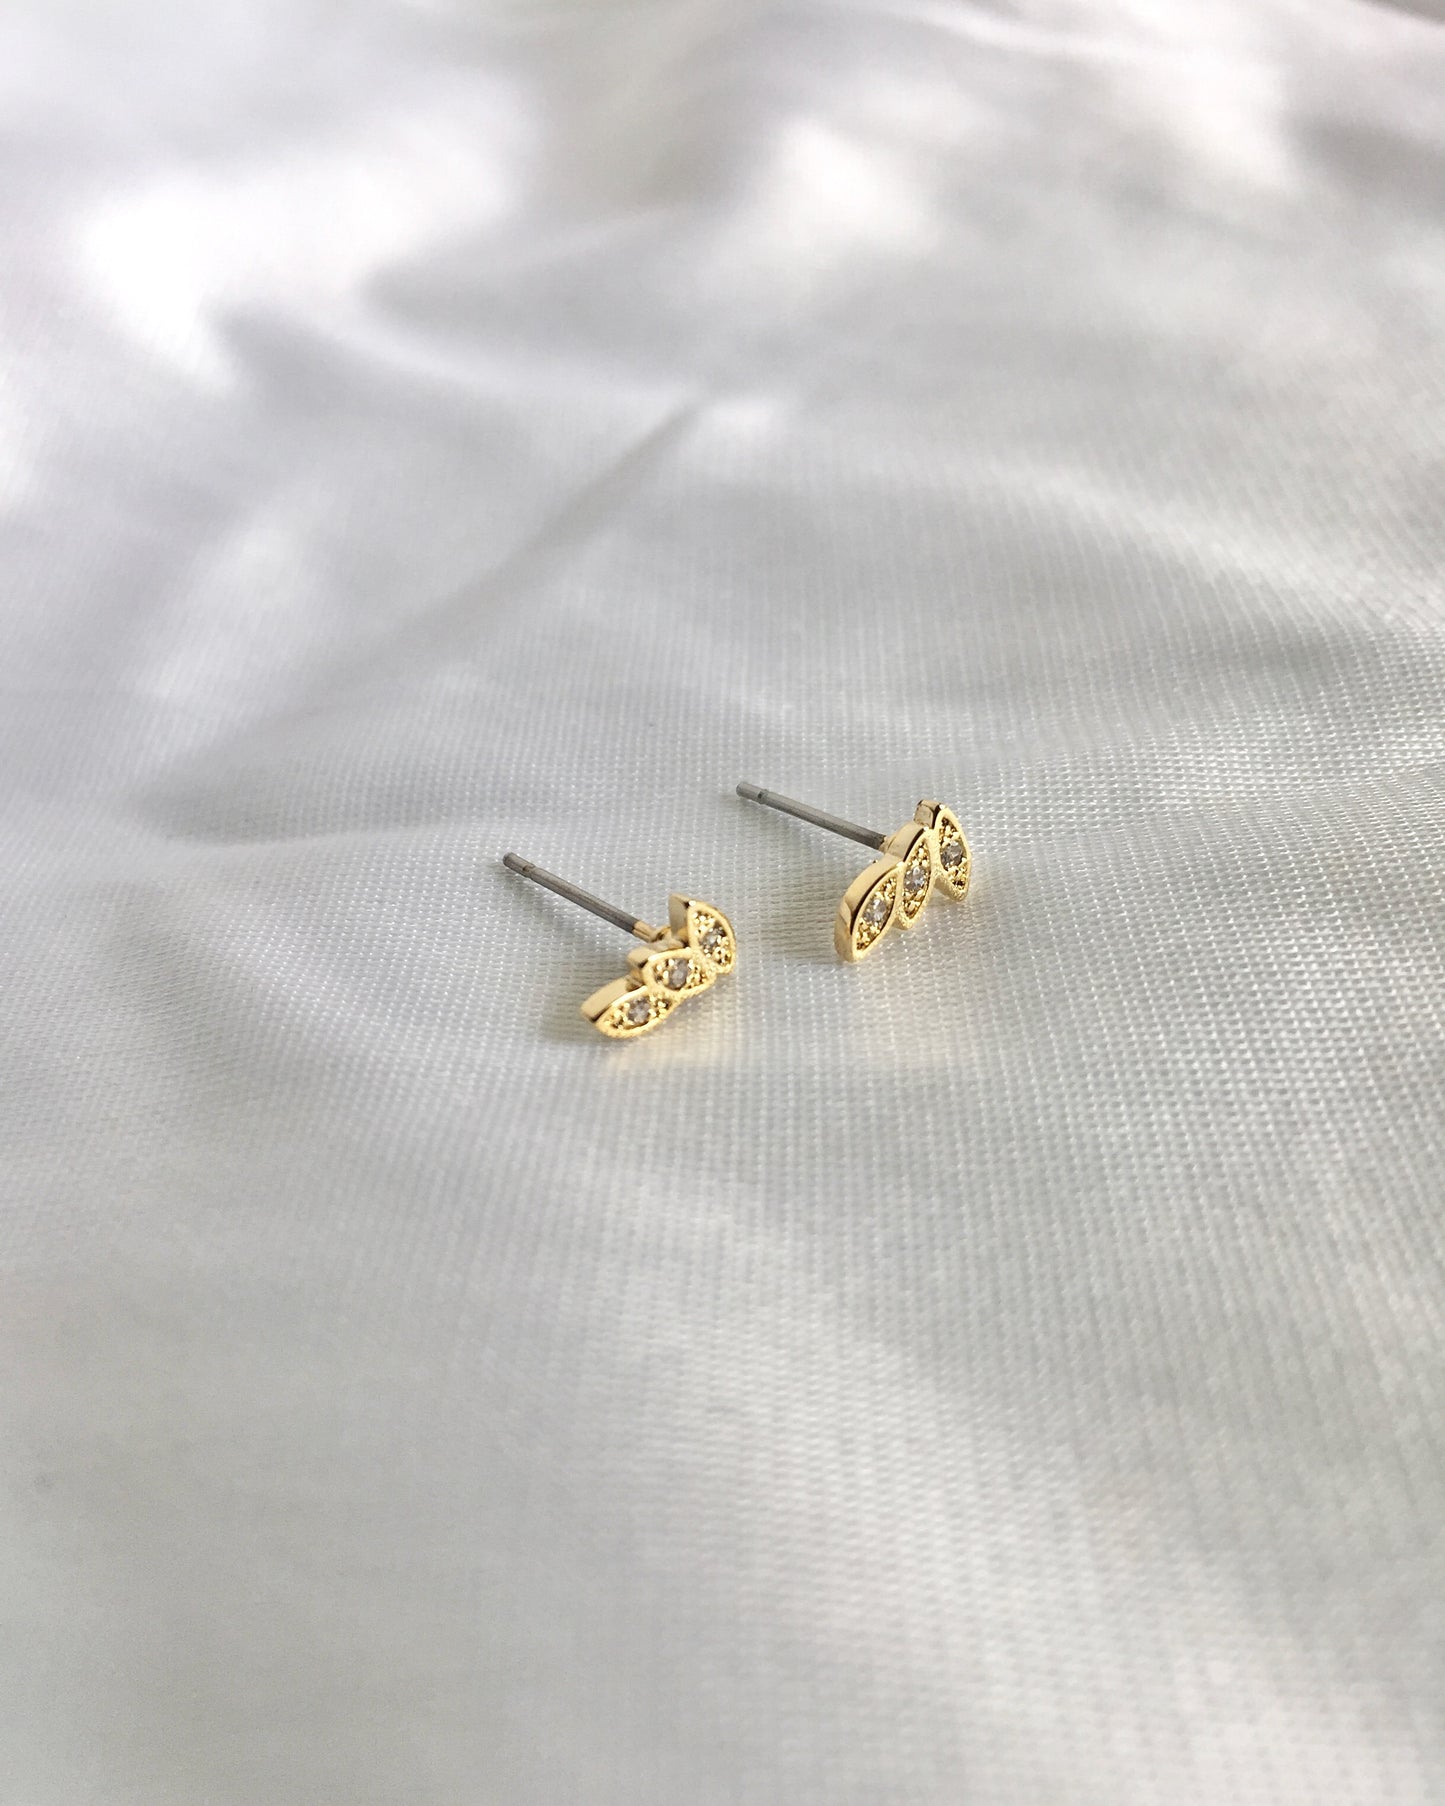 Leaf CZ Stud Earrings | Dainty Small Stud Earrings | Delicate Leaf Stud Earrings | IB Jewelry